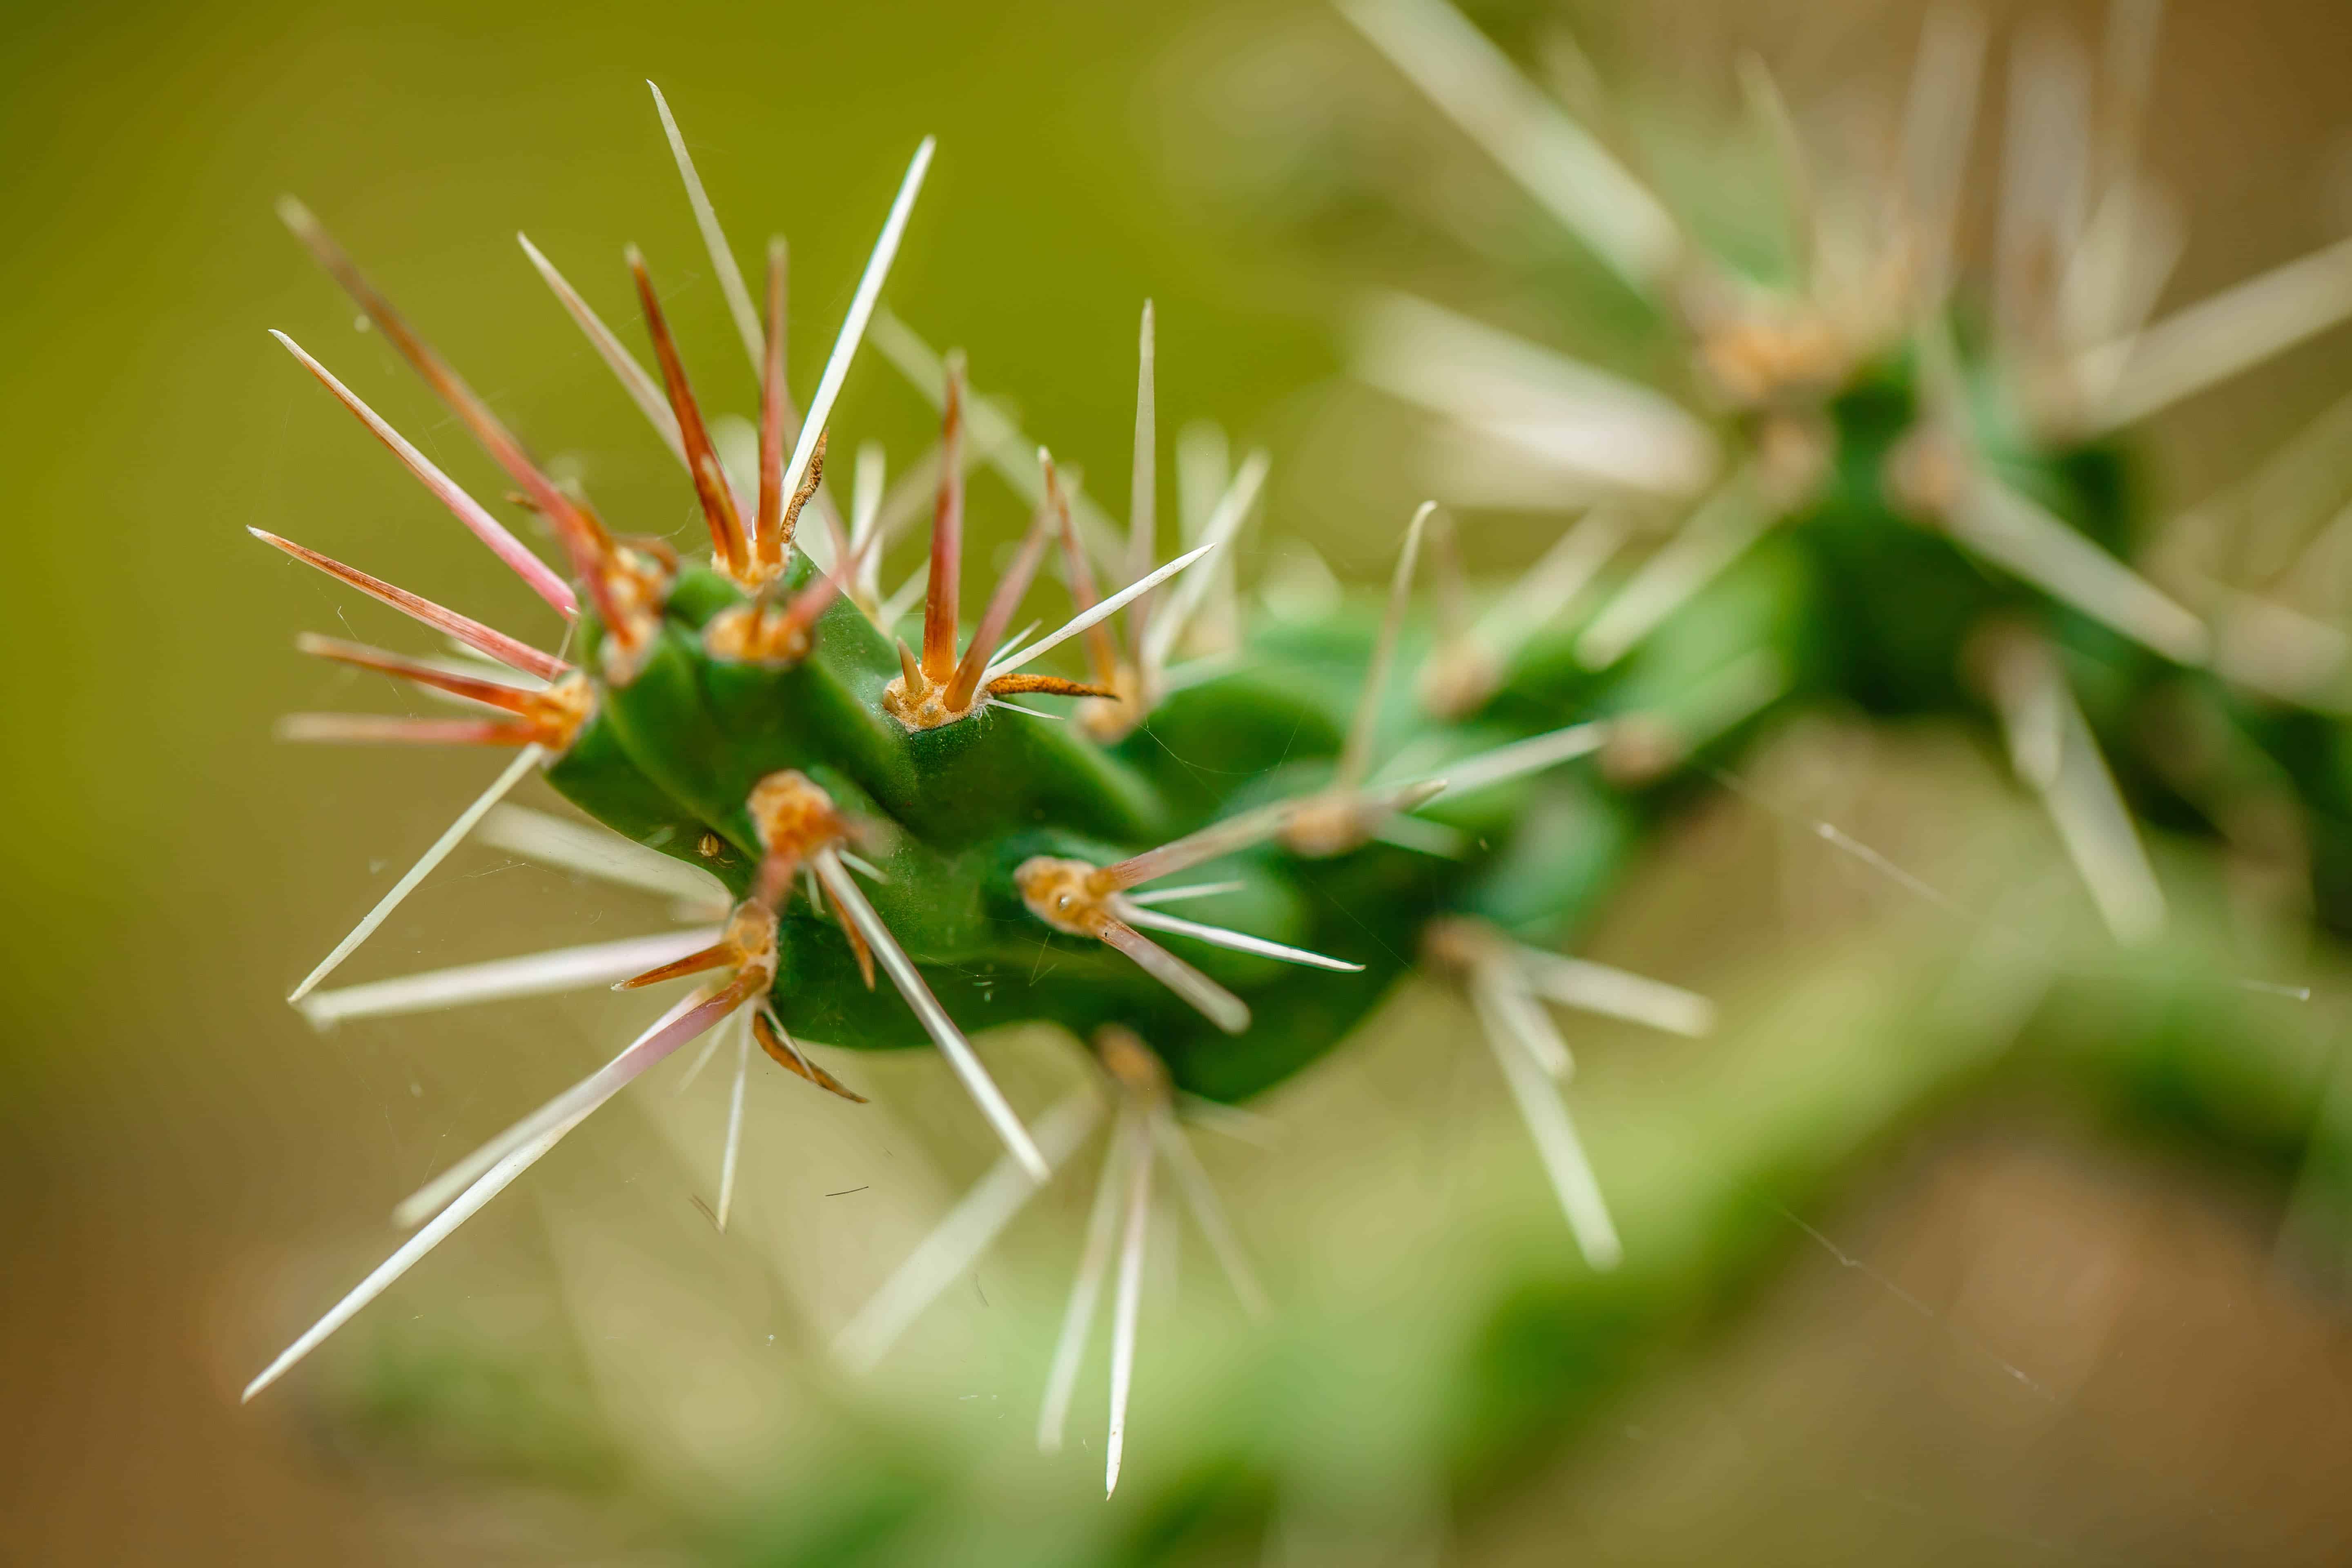 Cactus needles close-up.